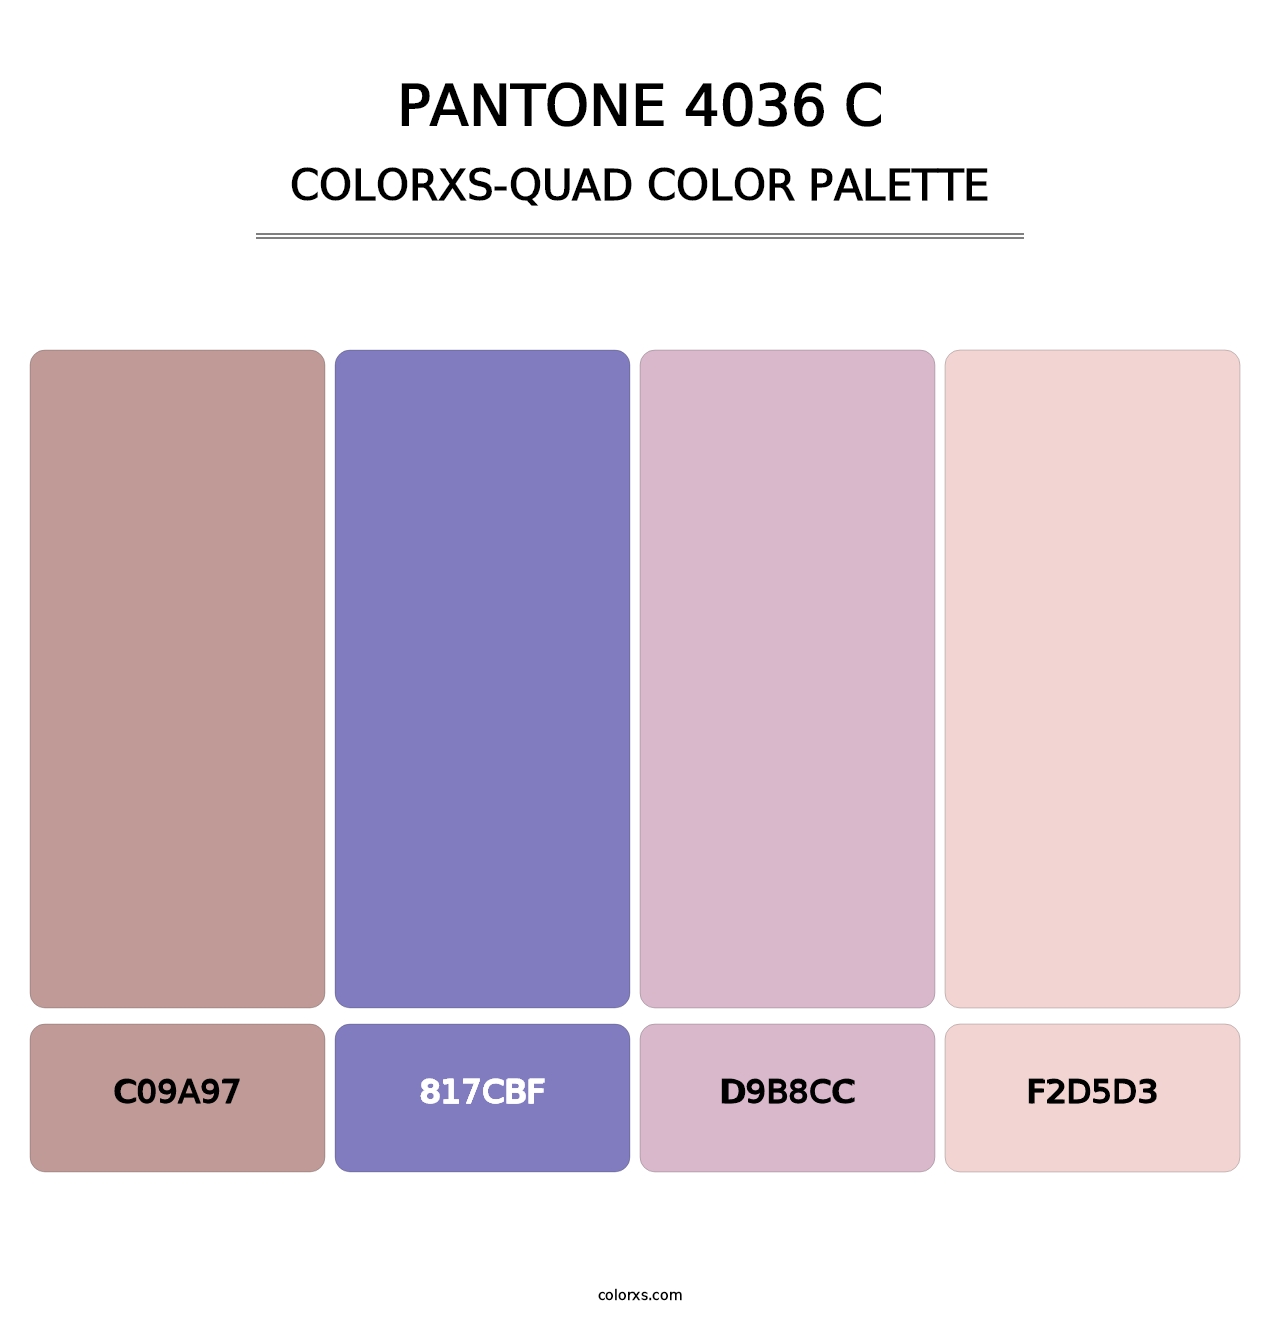 PANTONE 4036 C - Colorxs Quad Palette